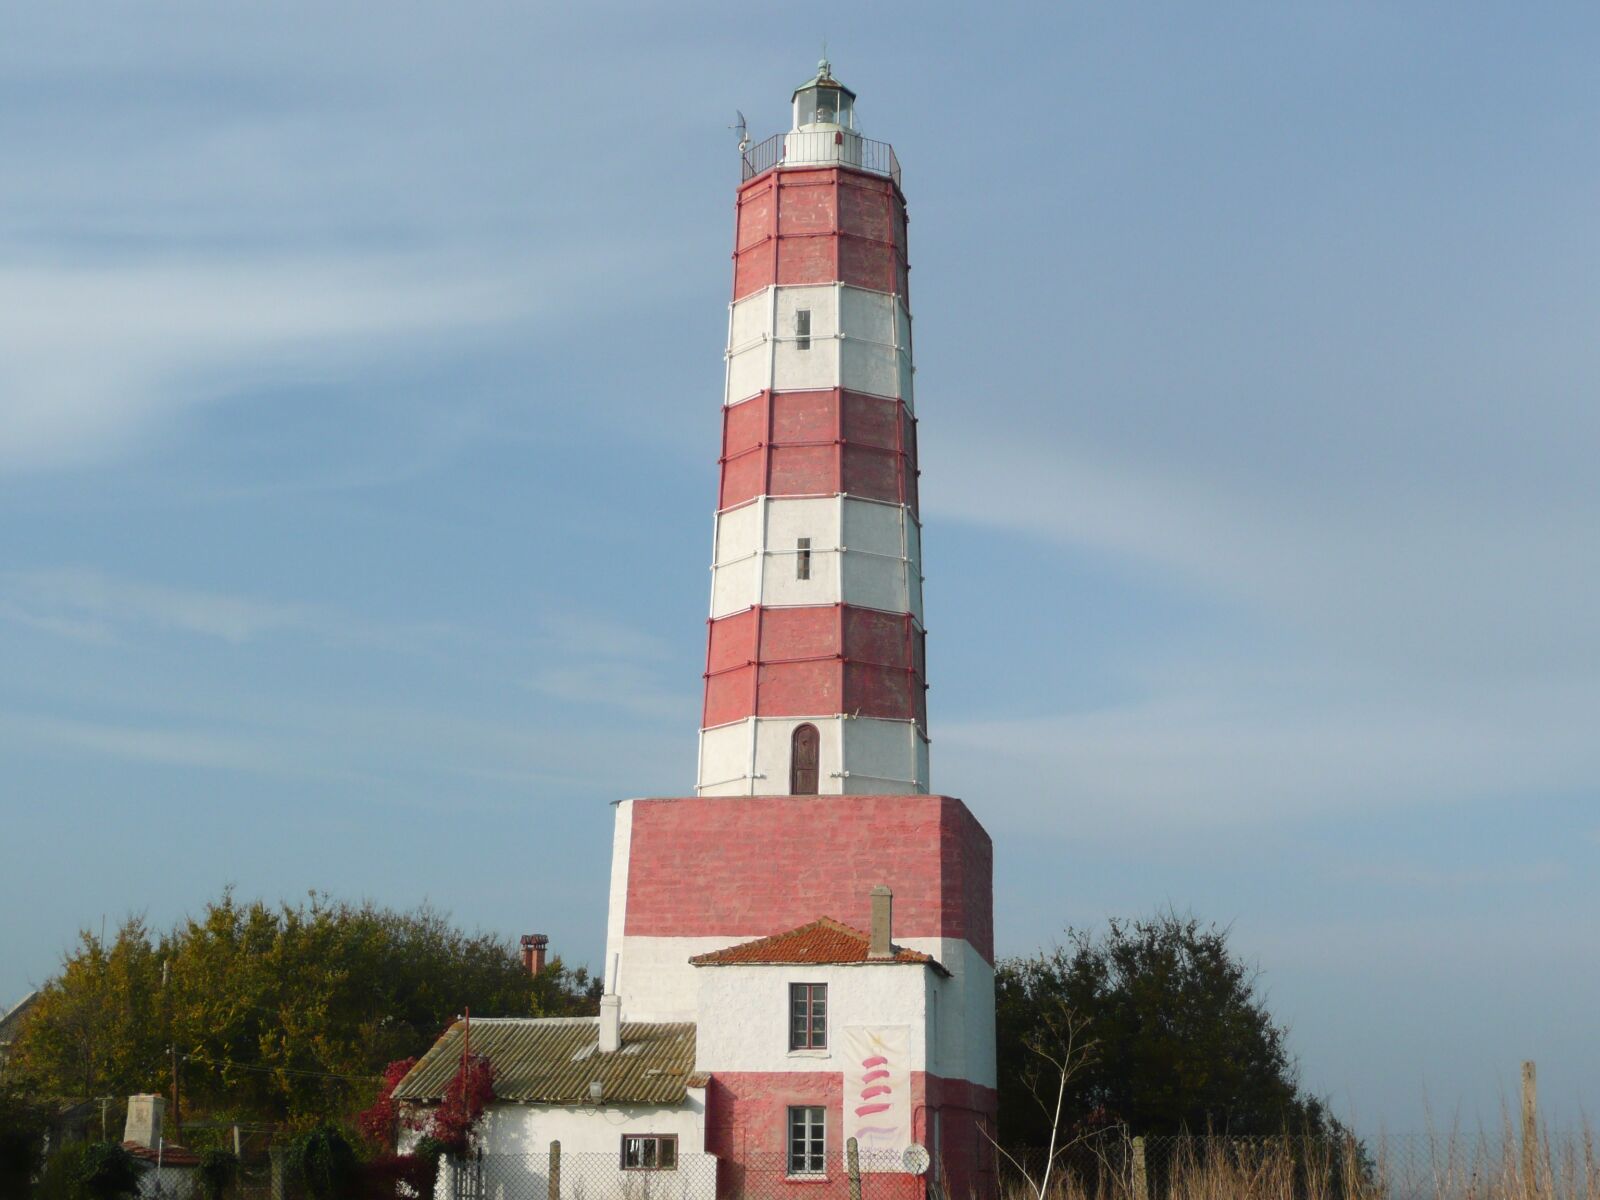 Panasonic DMC-TZ3 sample photo. Lighthouse, shabla, shabla lighthouse photography